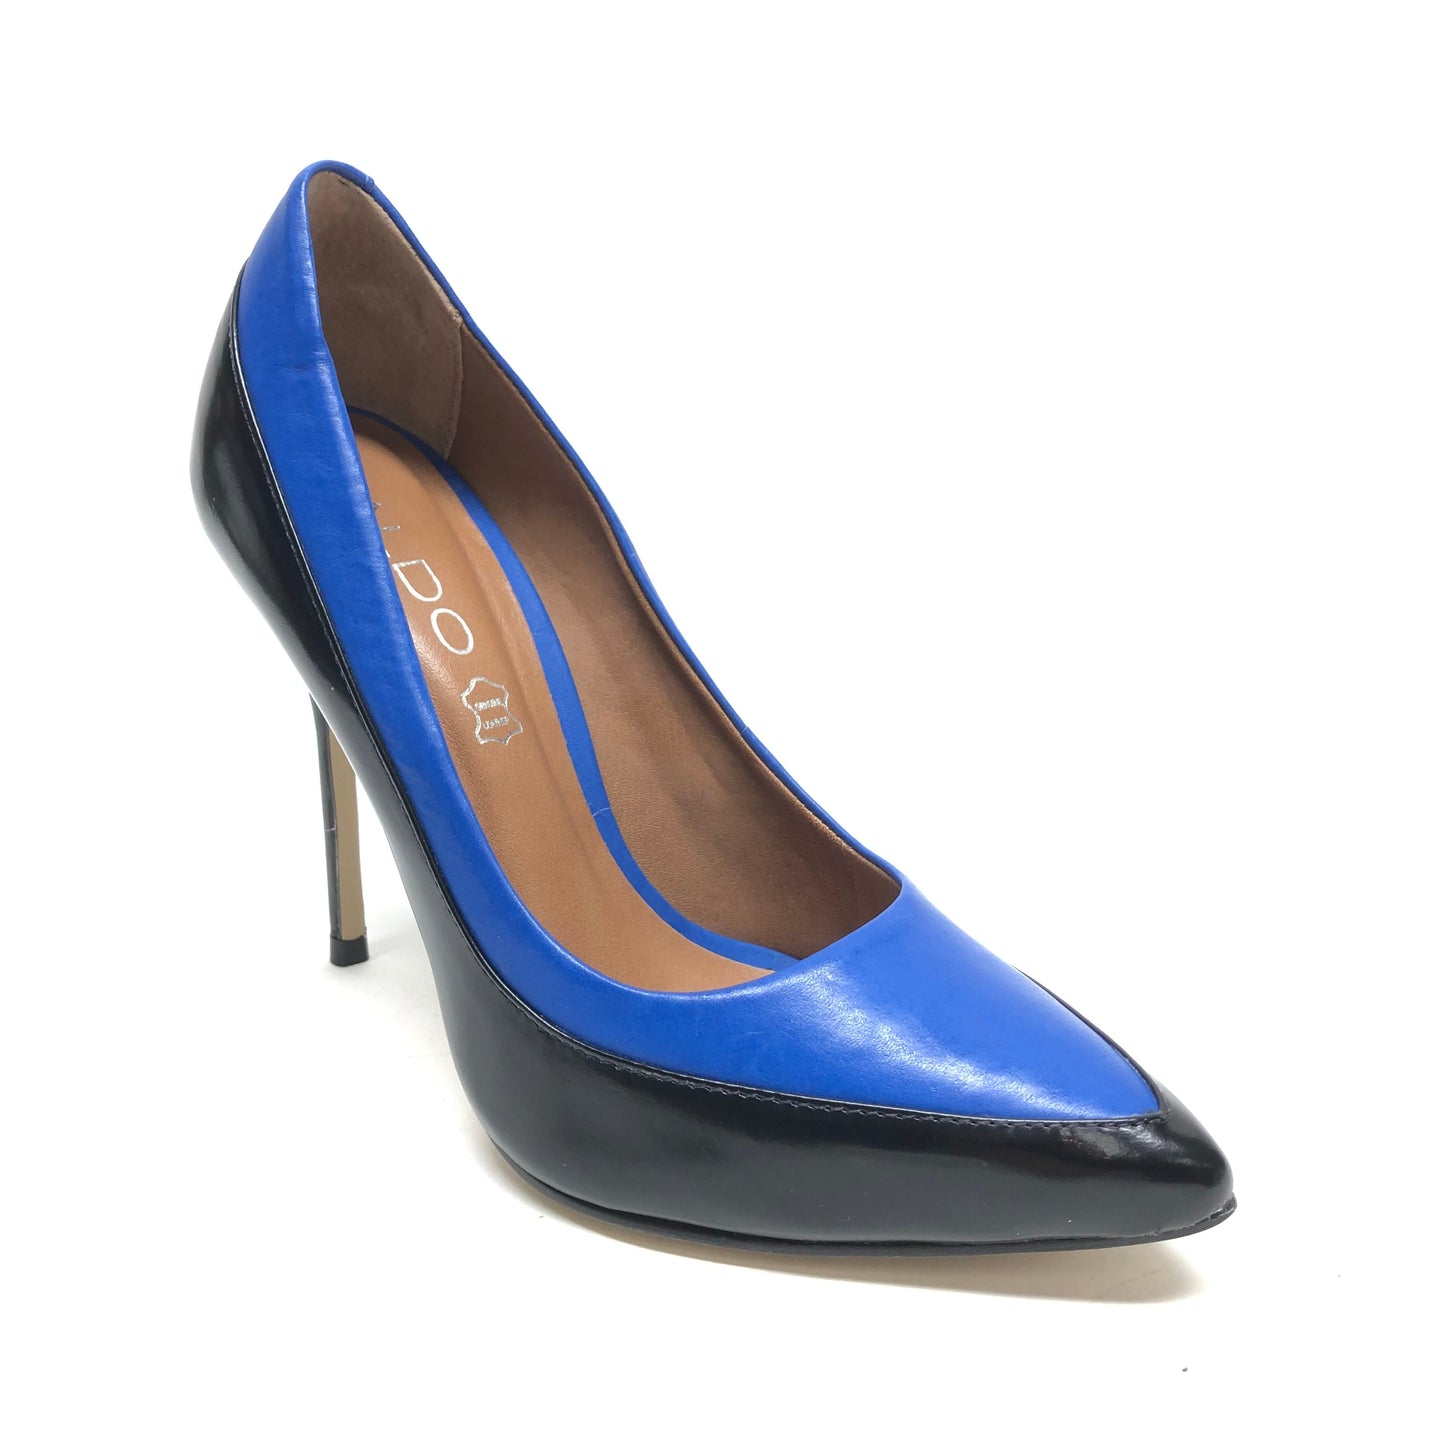 Black & Blue Shoes Heels Stiletto Aldo, Size 6